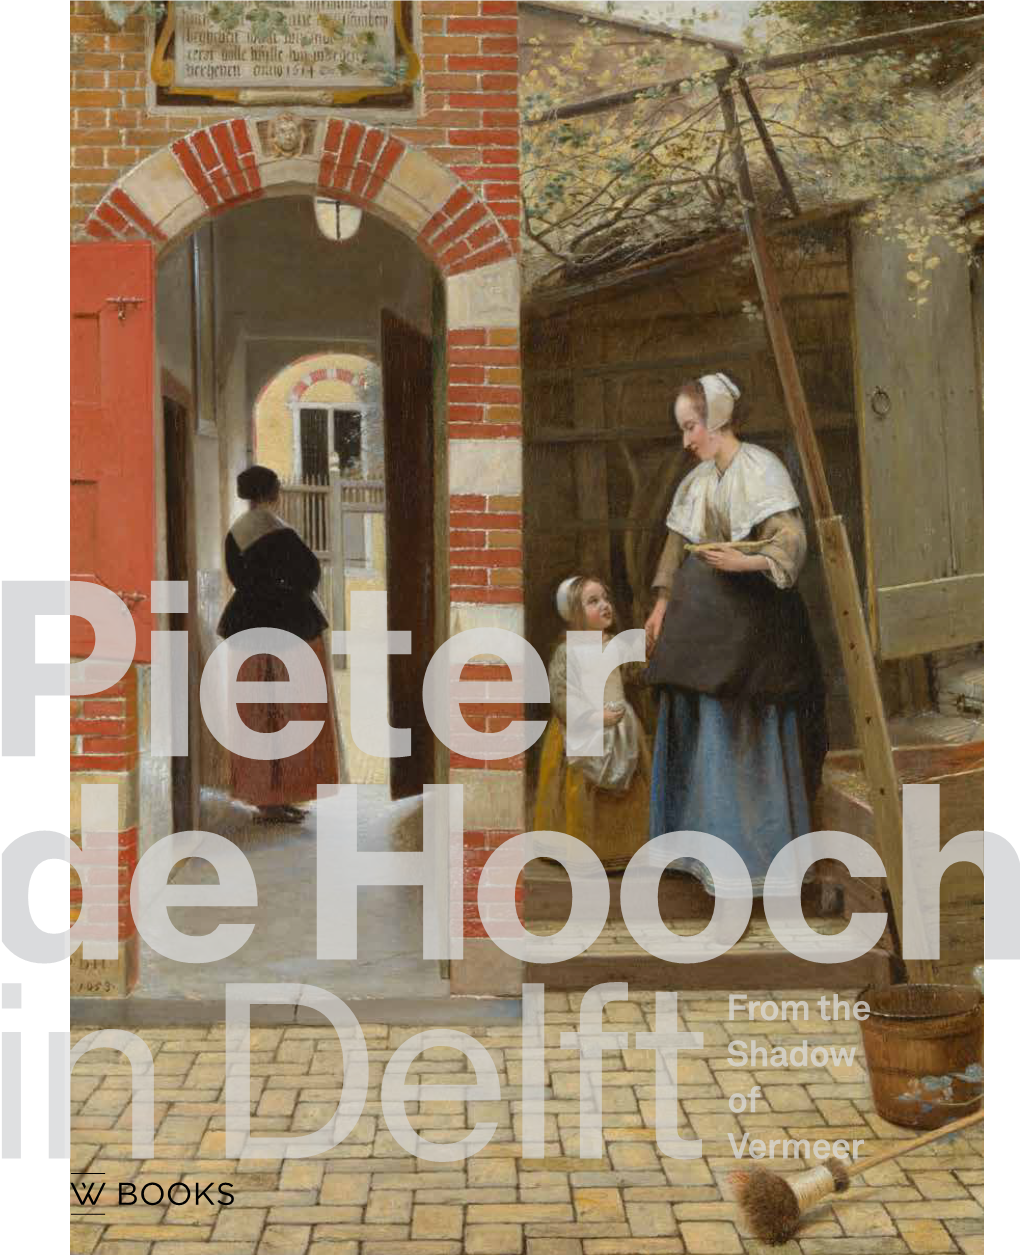 Pieter De Hooch in Delft